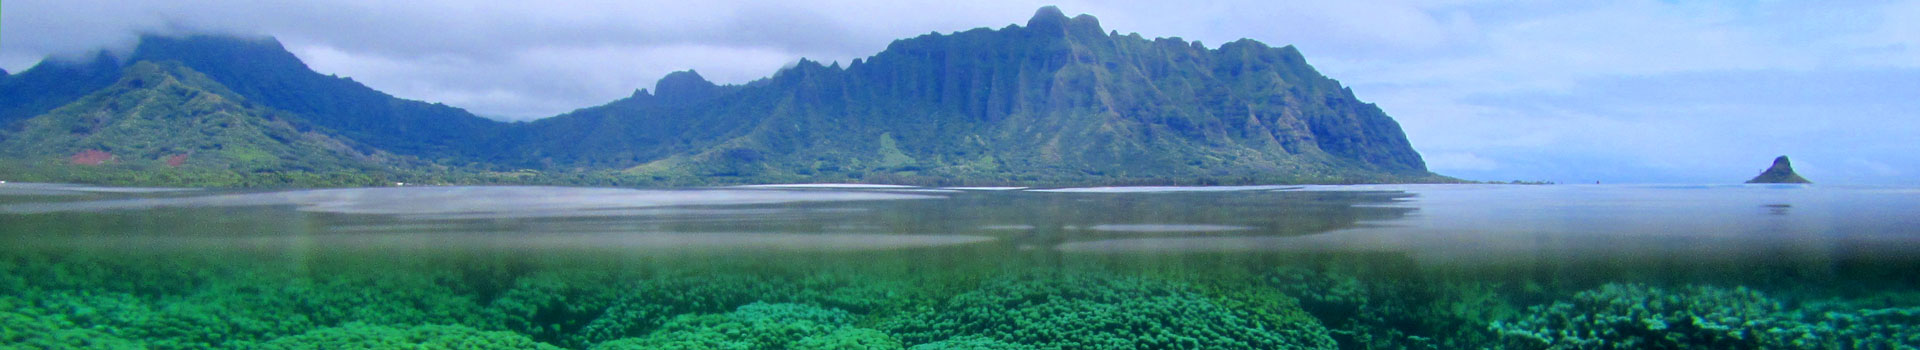 Kāneʻohe Bay